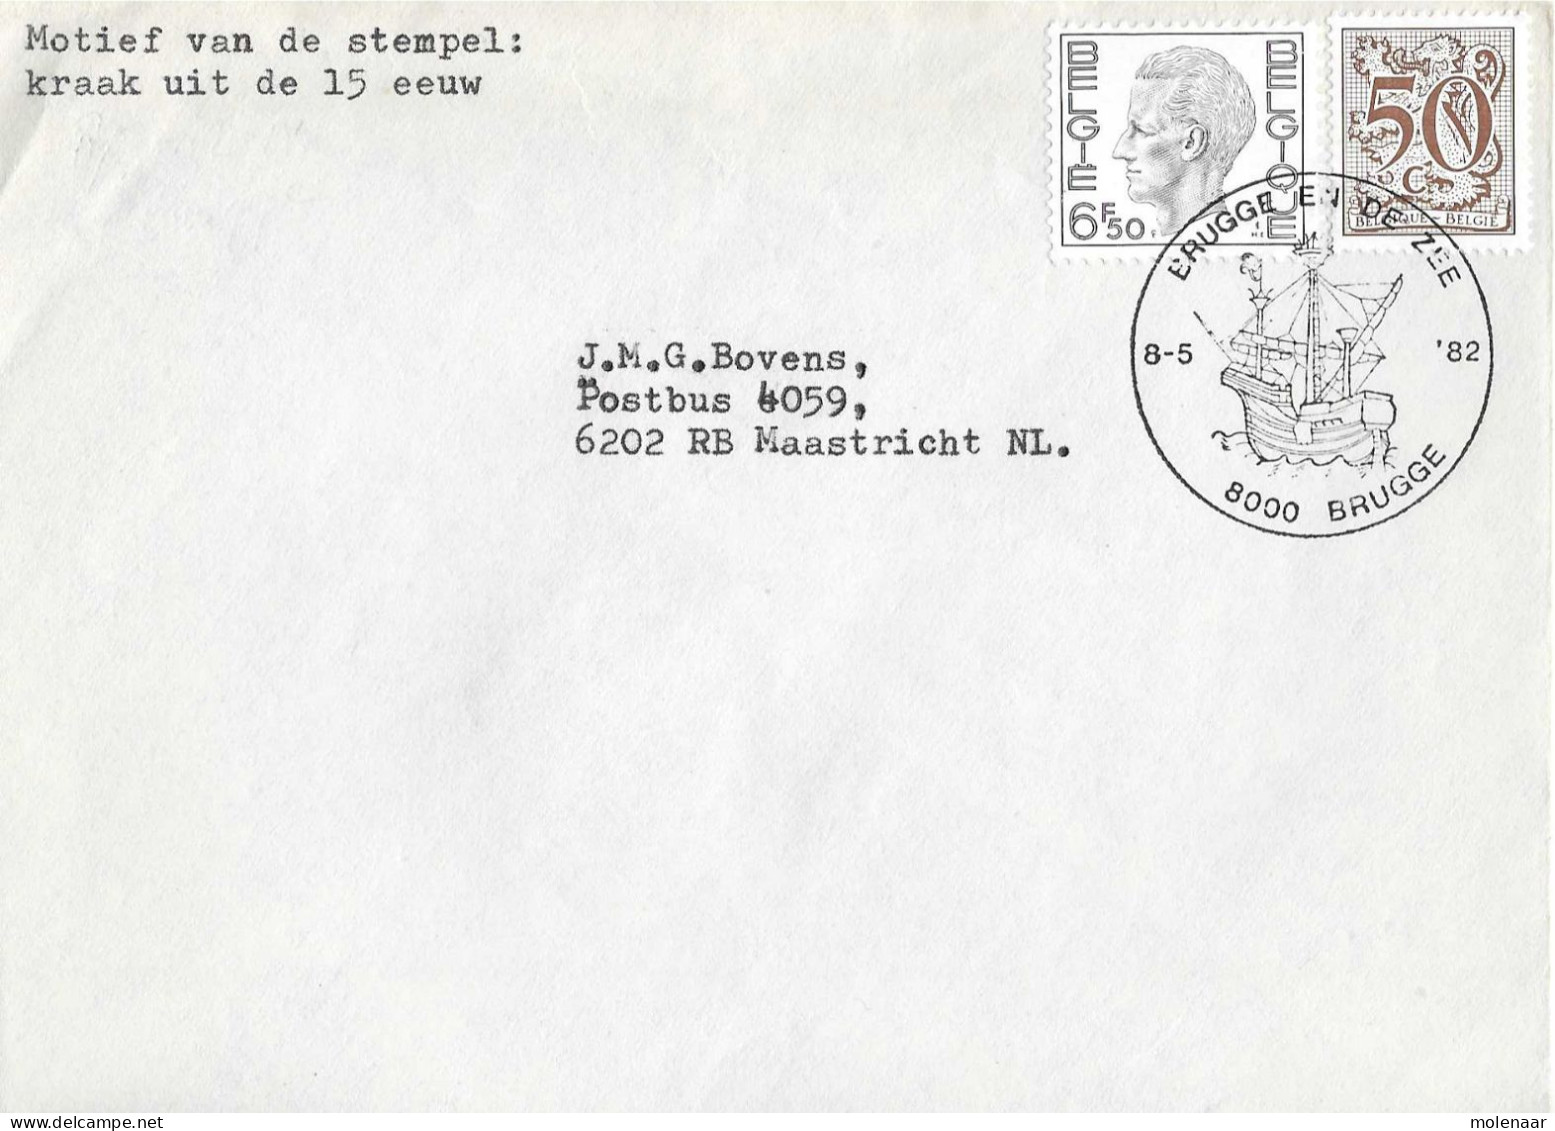 Postzegels > Europa > België > 1951-... > 1981-1990 > Brief Uit 1982 Met 2 Zegels (17041) - Storia Postale